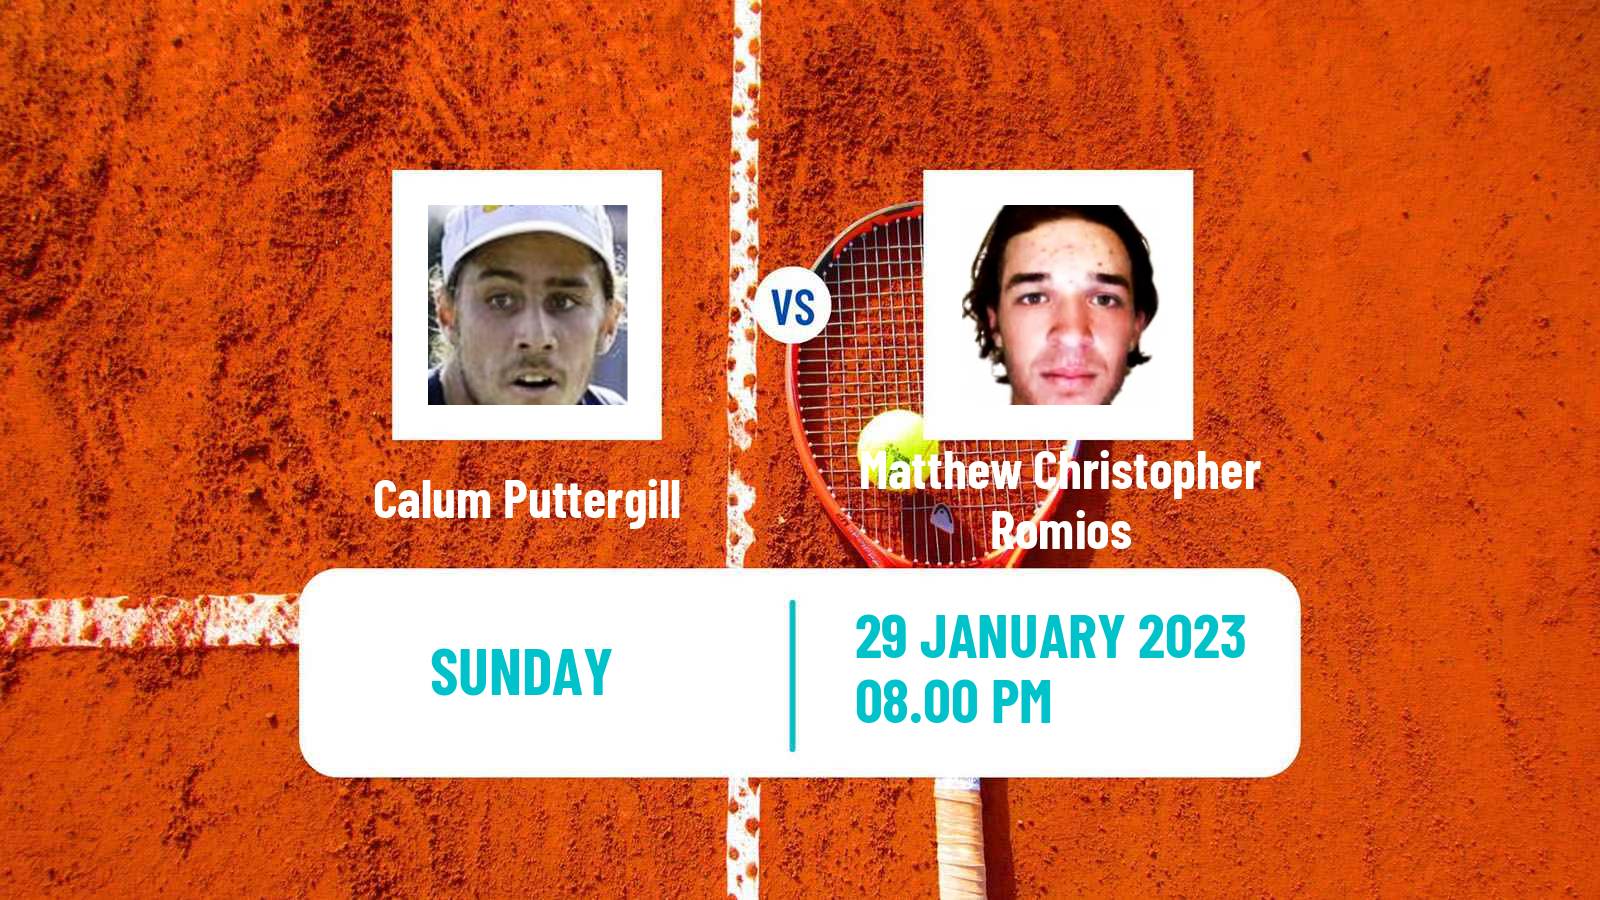 Tennis ATP Challenger Calum Puttergill - Matthew Christopher Romios